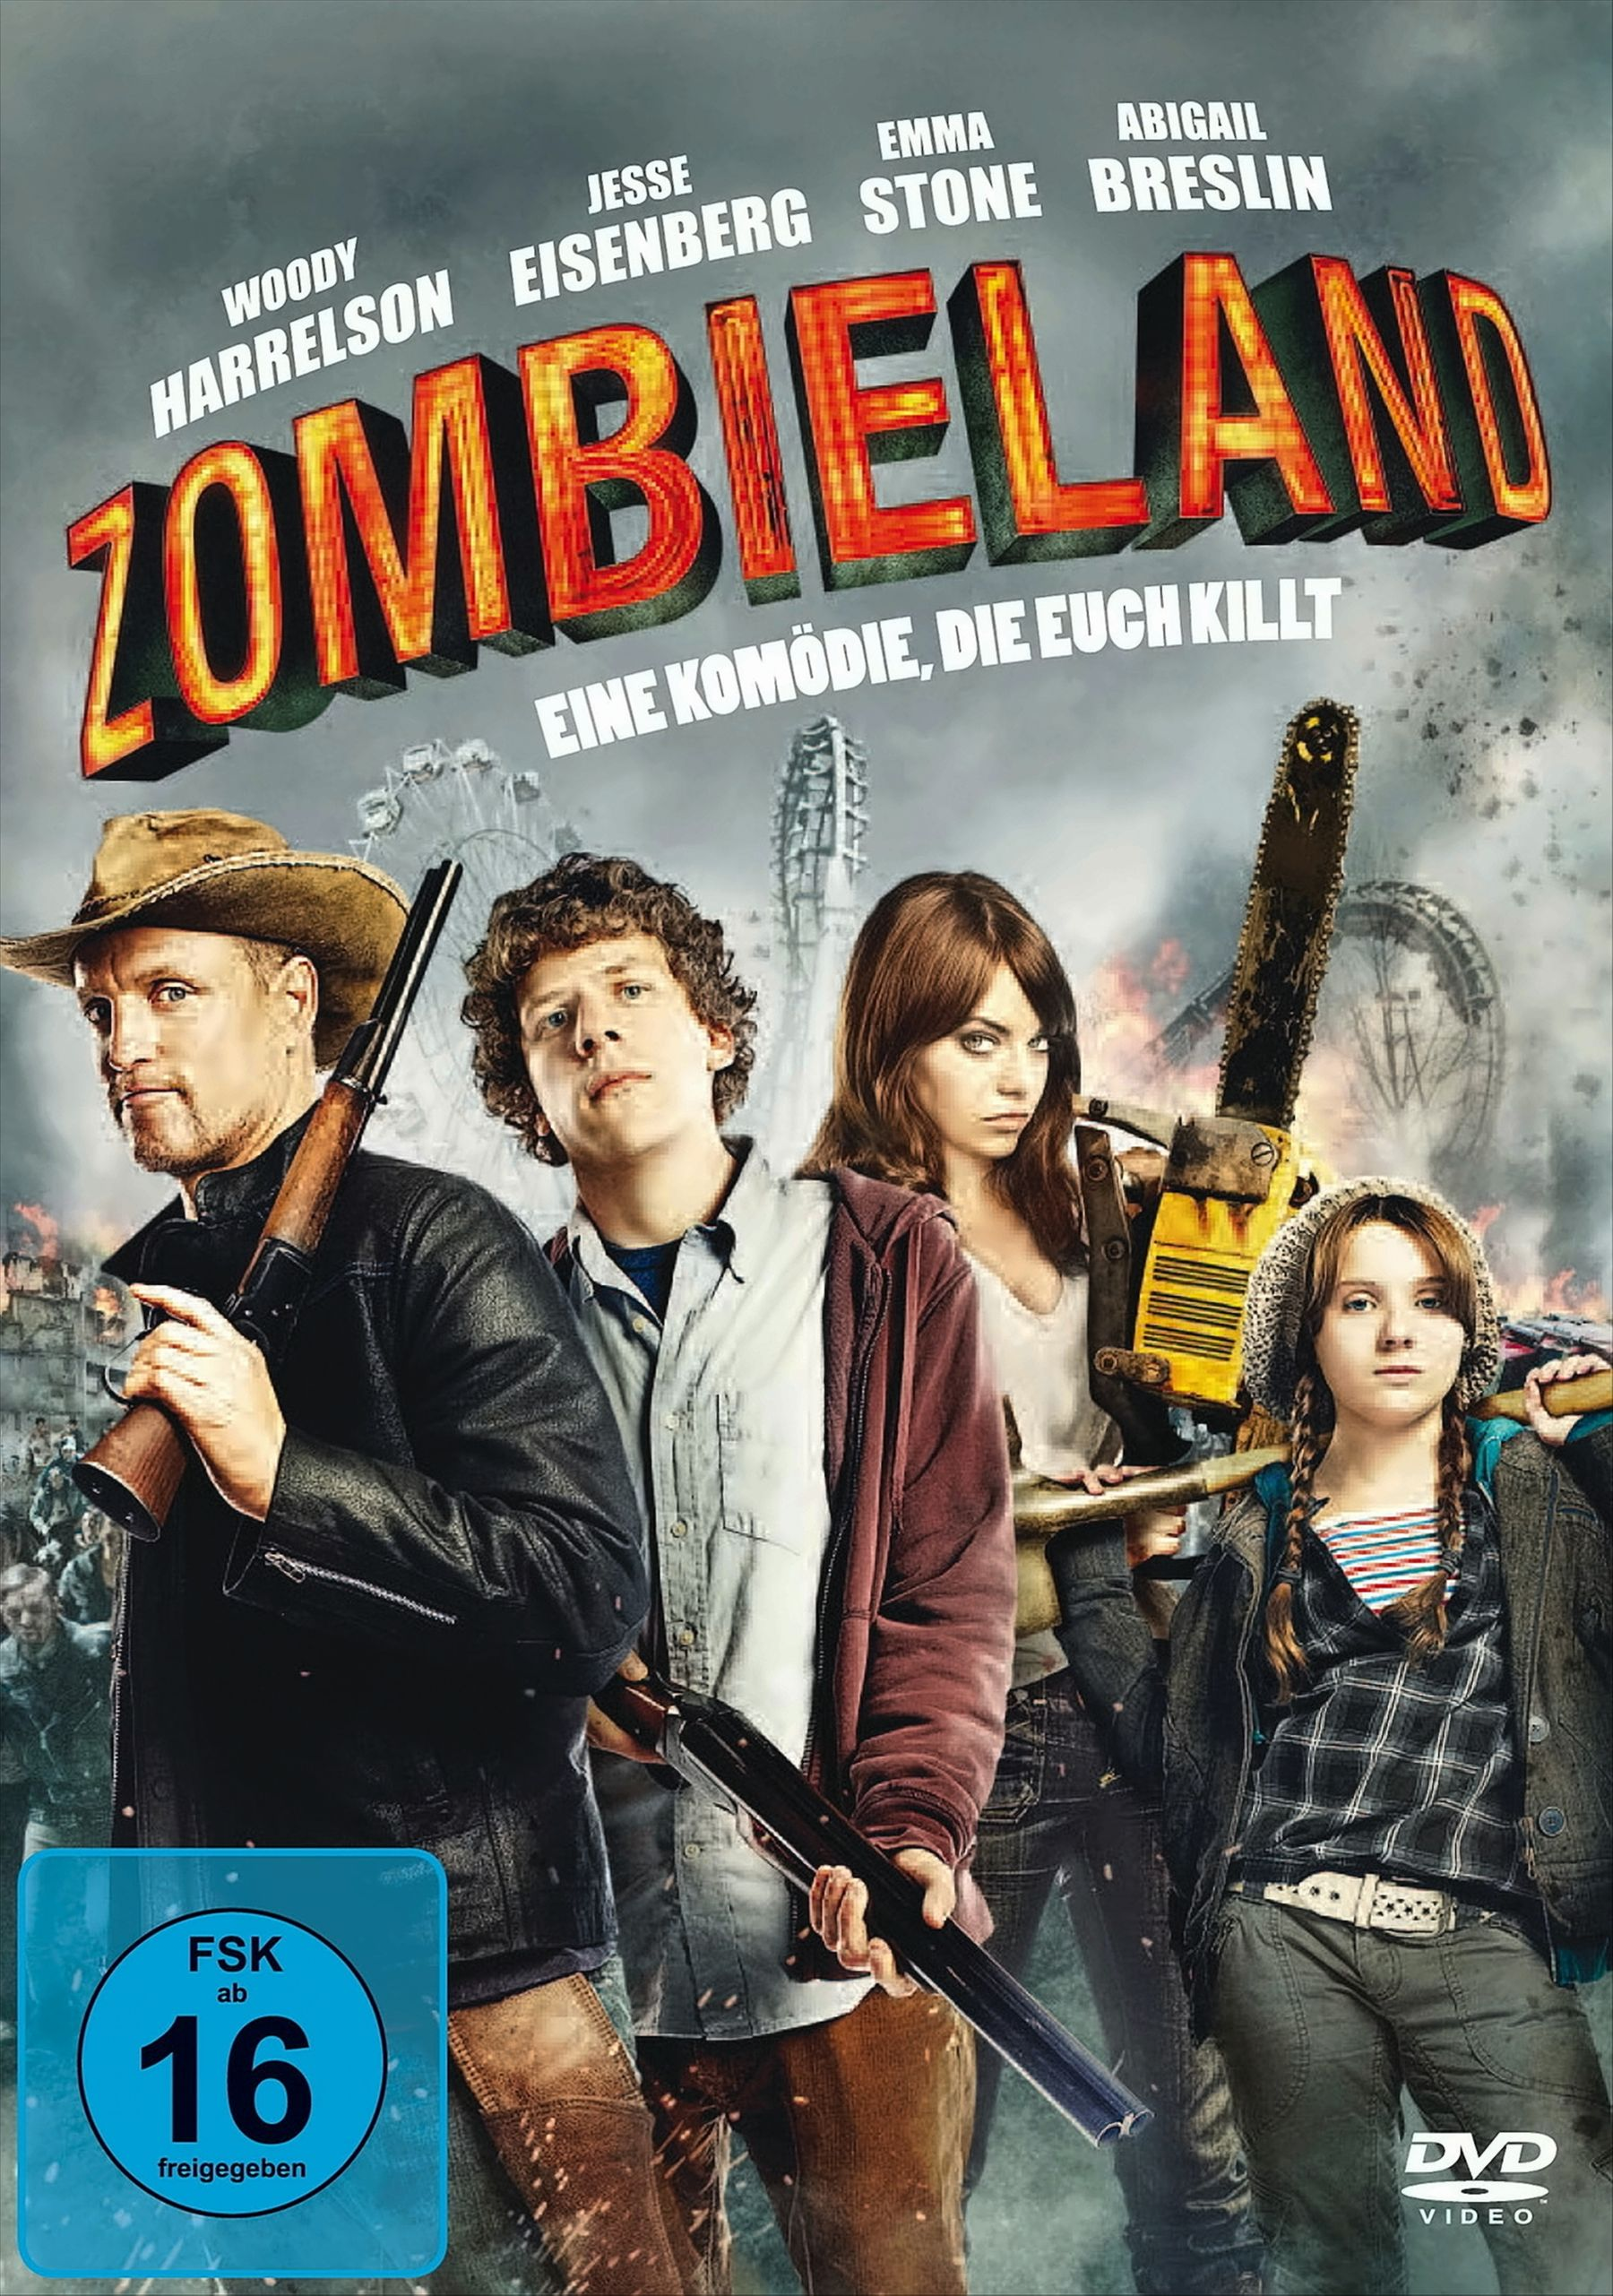 Feel (I Zombieland Good!) DVD